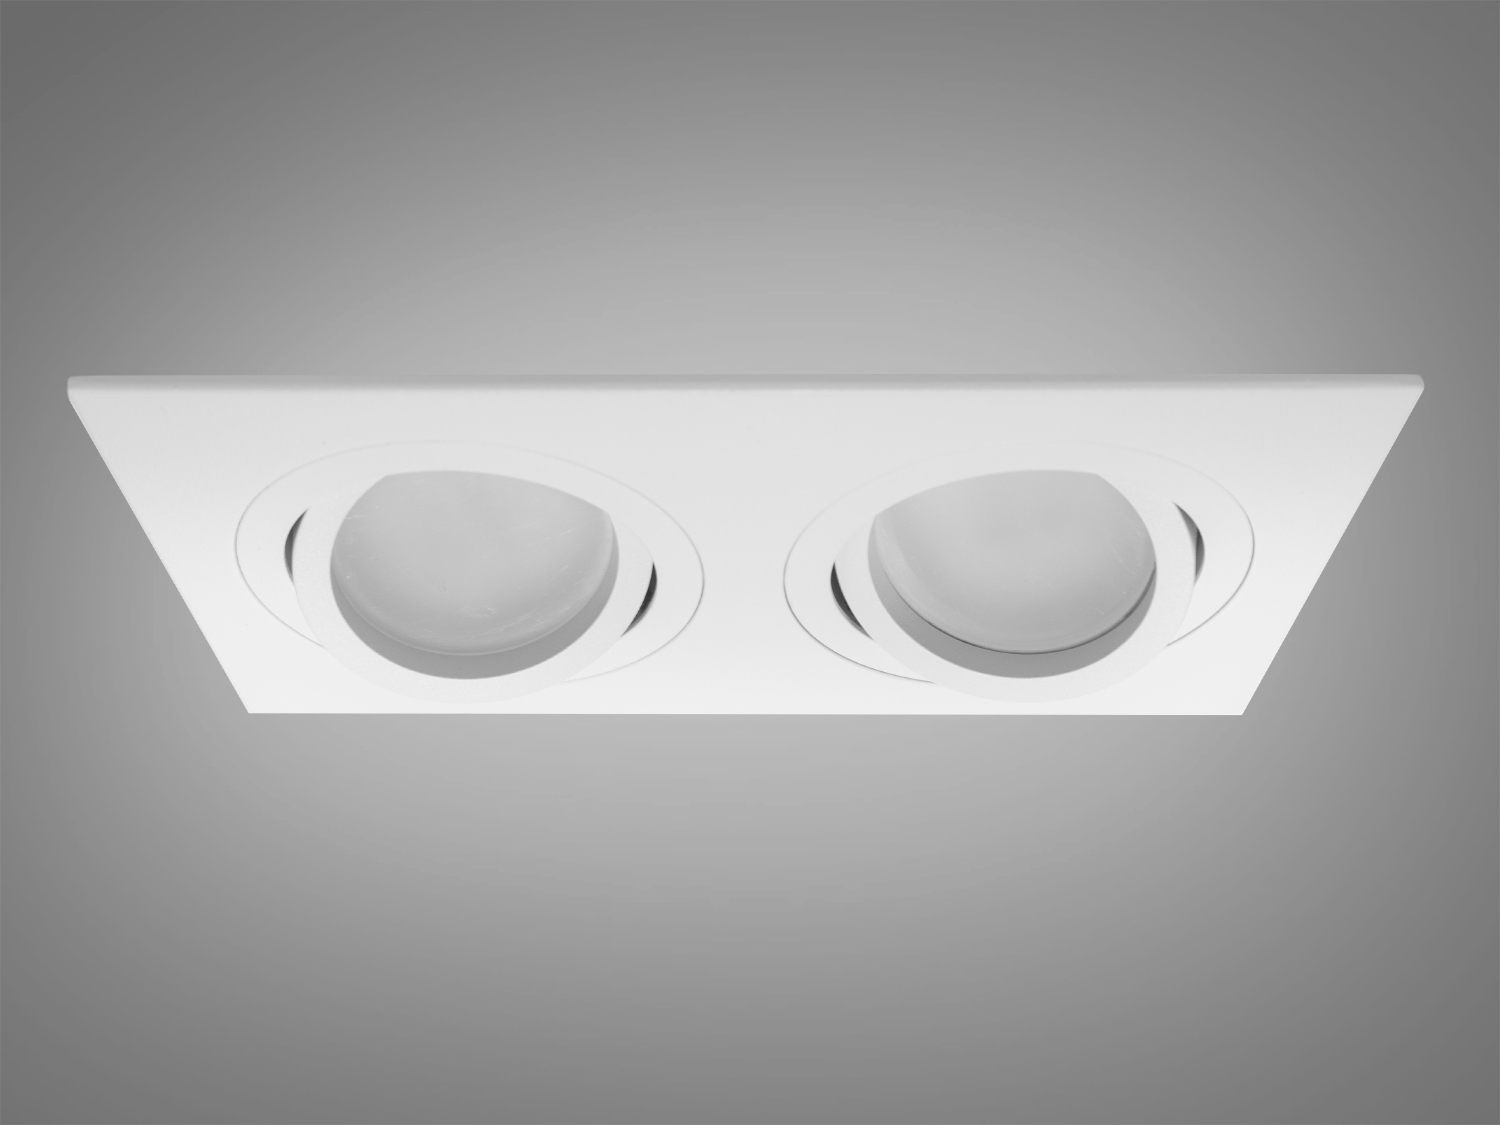 Сучасний здвоєний поворотний точковий світильник на кухню з алюмінію, пофарбований у нейтральний білий колір, є справжнім шедевром дизайну від ТМ 